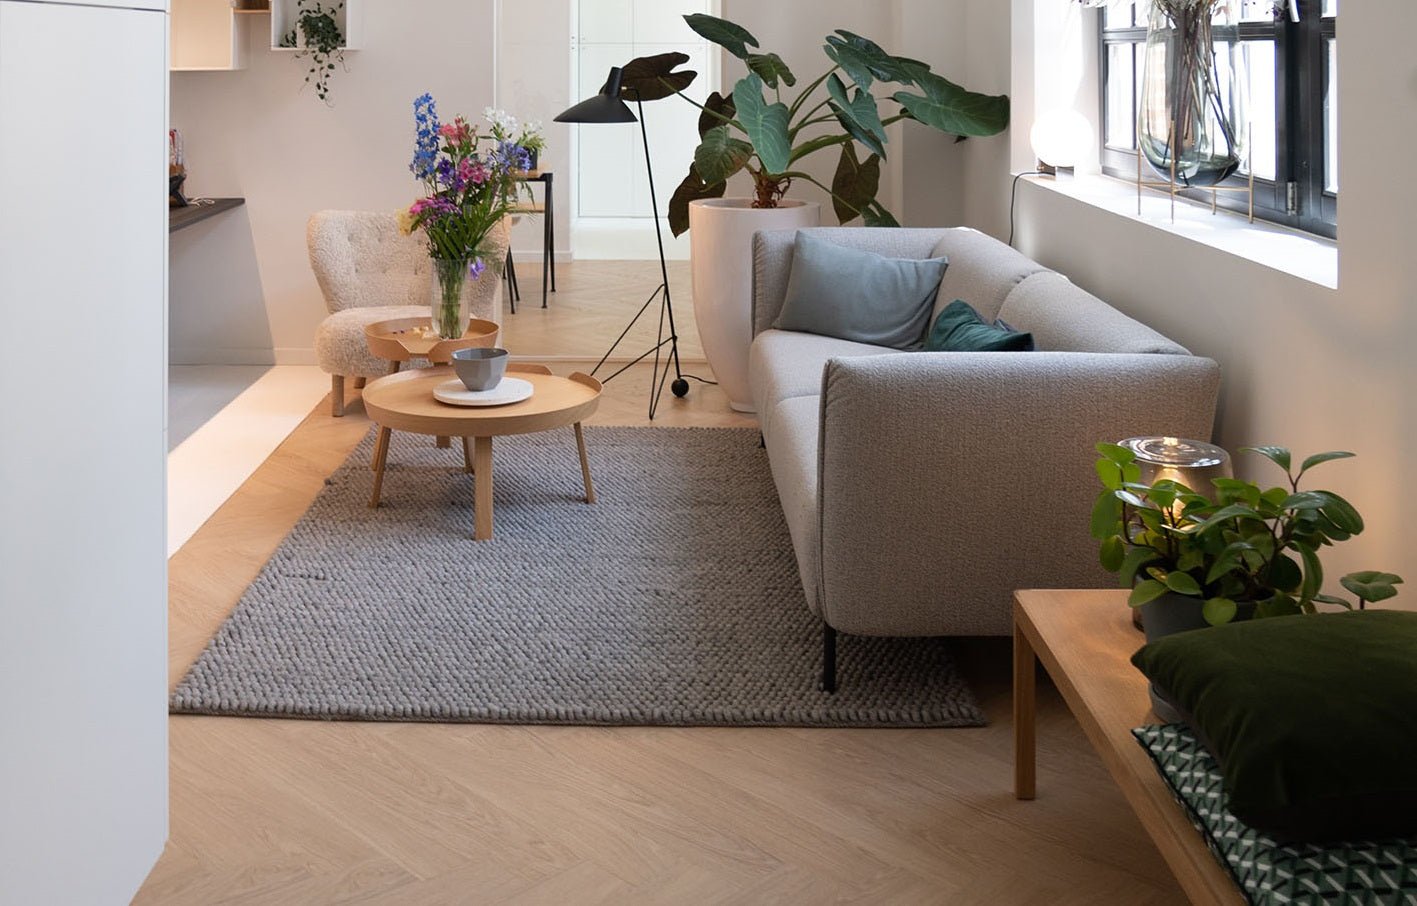 Gasrekening verlagen? Het maximale rendement van vloerverwarming met deze vloeren - Solza.nl